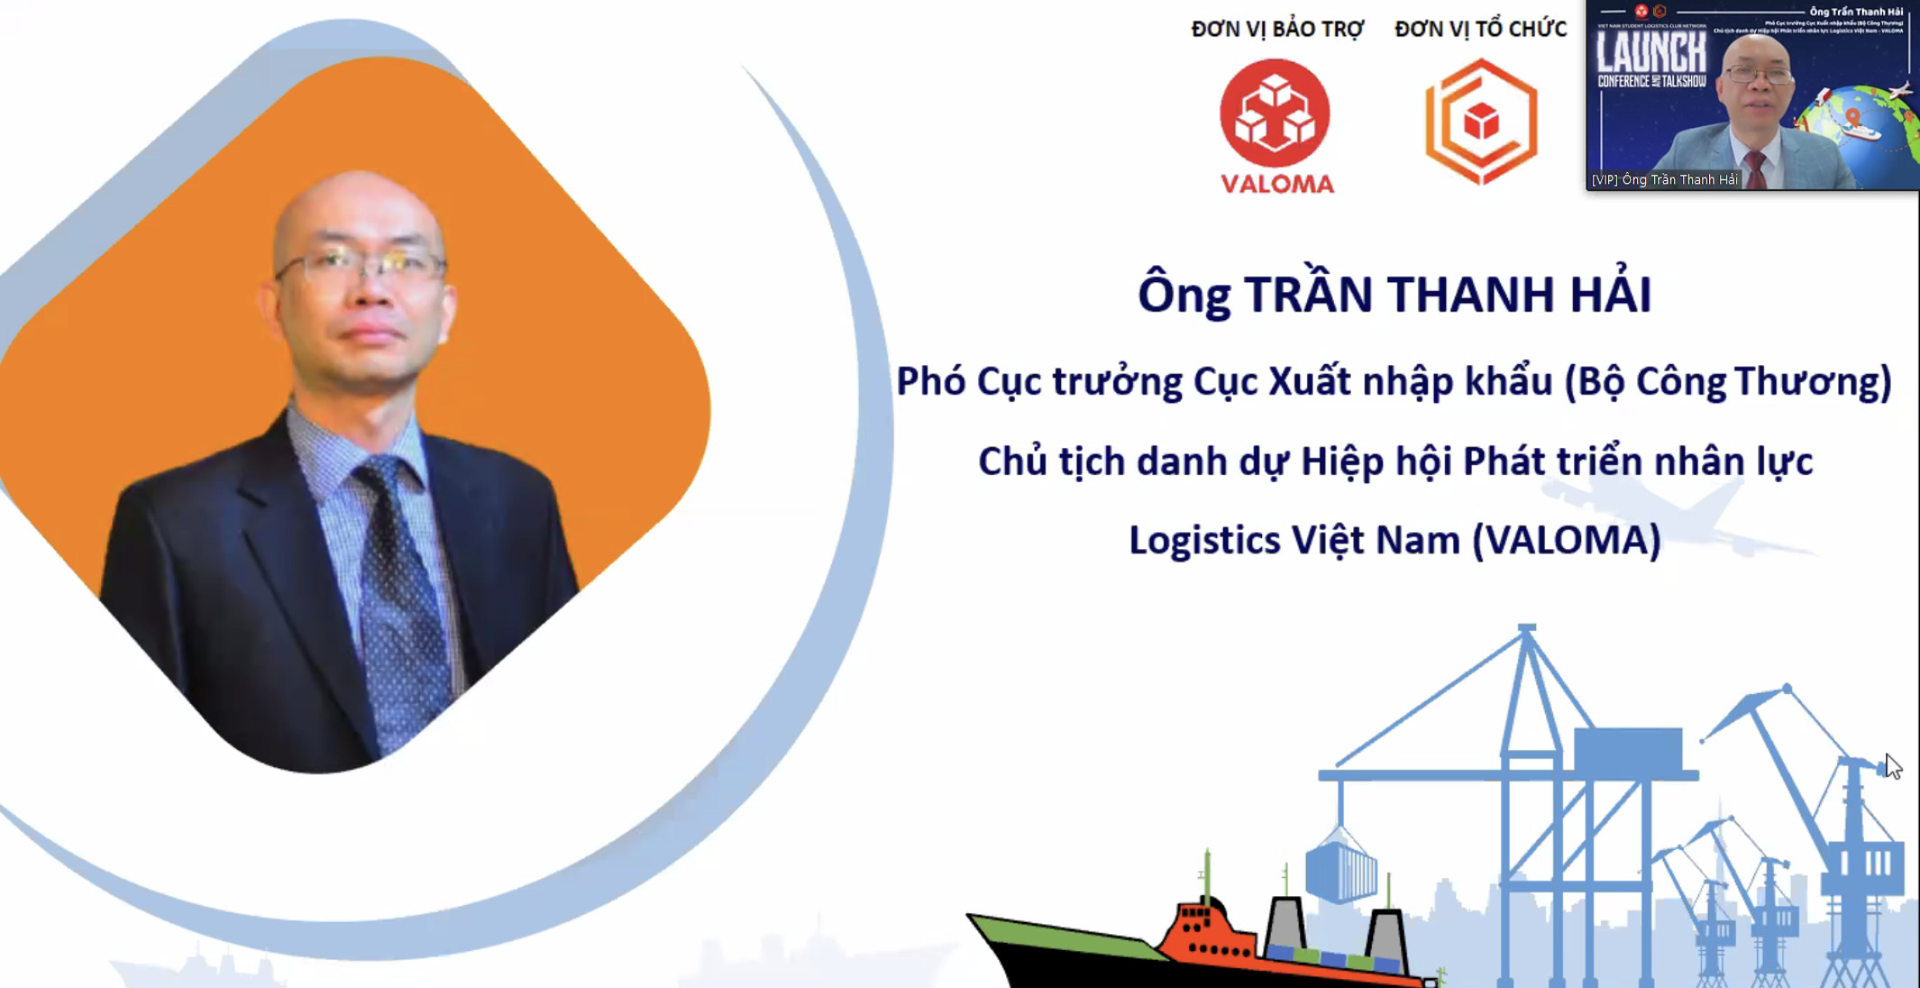 Ông Trần Thanh Hải -  Phó Cục trưởng Cục Xuất nhập khẩu - Bộ Công Thương, Chủ tịch danh dự của Hiệp hội Phát triển nhân lực Logistics Việt Nam phát biểu khai mạc